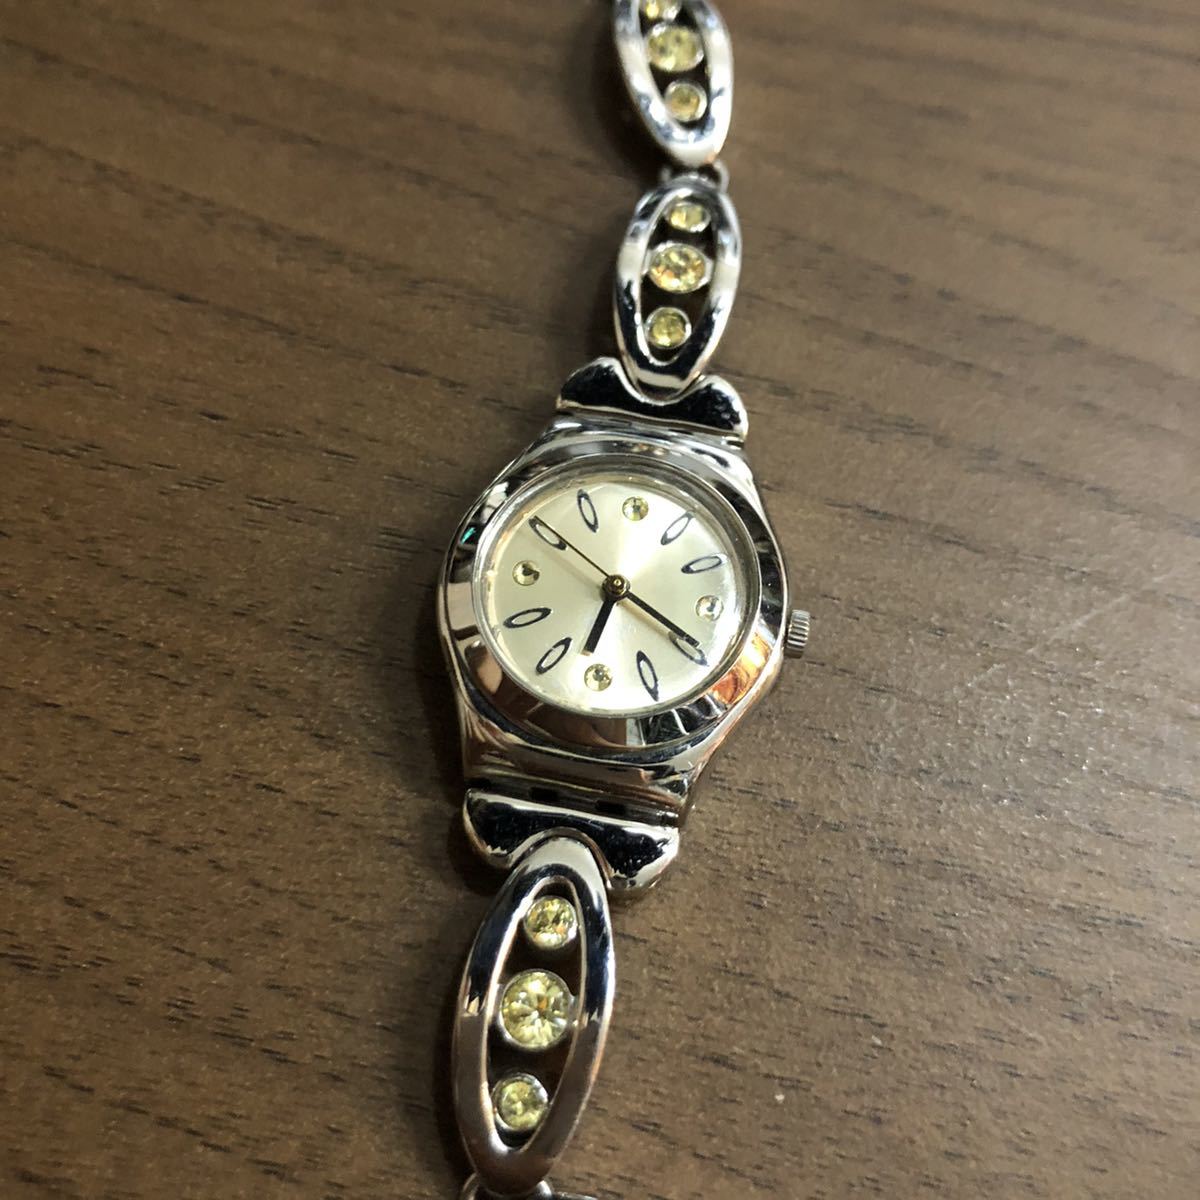  утиль swatch irony Swatch наручные часы серебряный женский кварц аксессуары часы часы серебряный драгоценнный камень батарейка 